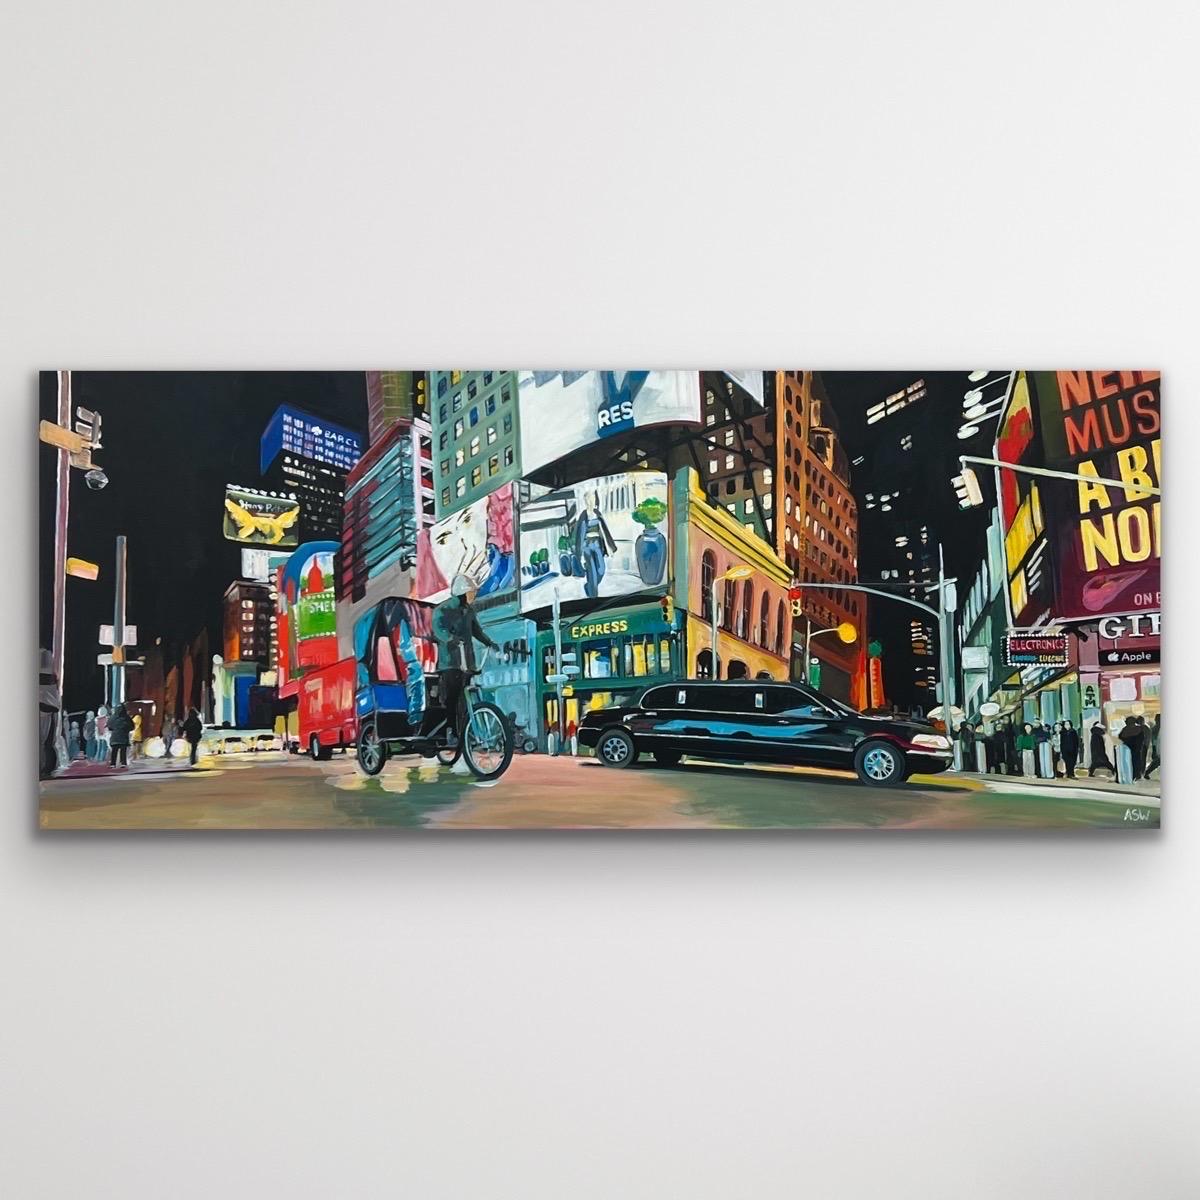 New York City Panoramic Street Scene with Limousine and Neon Lights in the Rain (Scène de rue panoramique avec limousine et néons sous la pluie) - Painting de Angela Wakefield